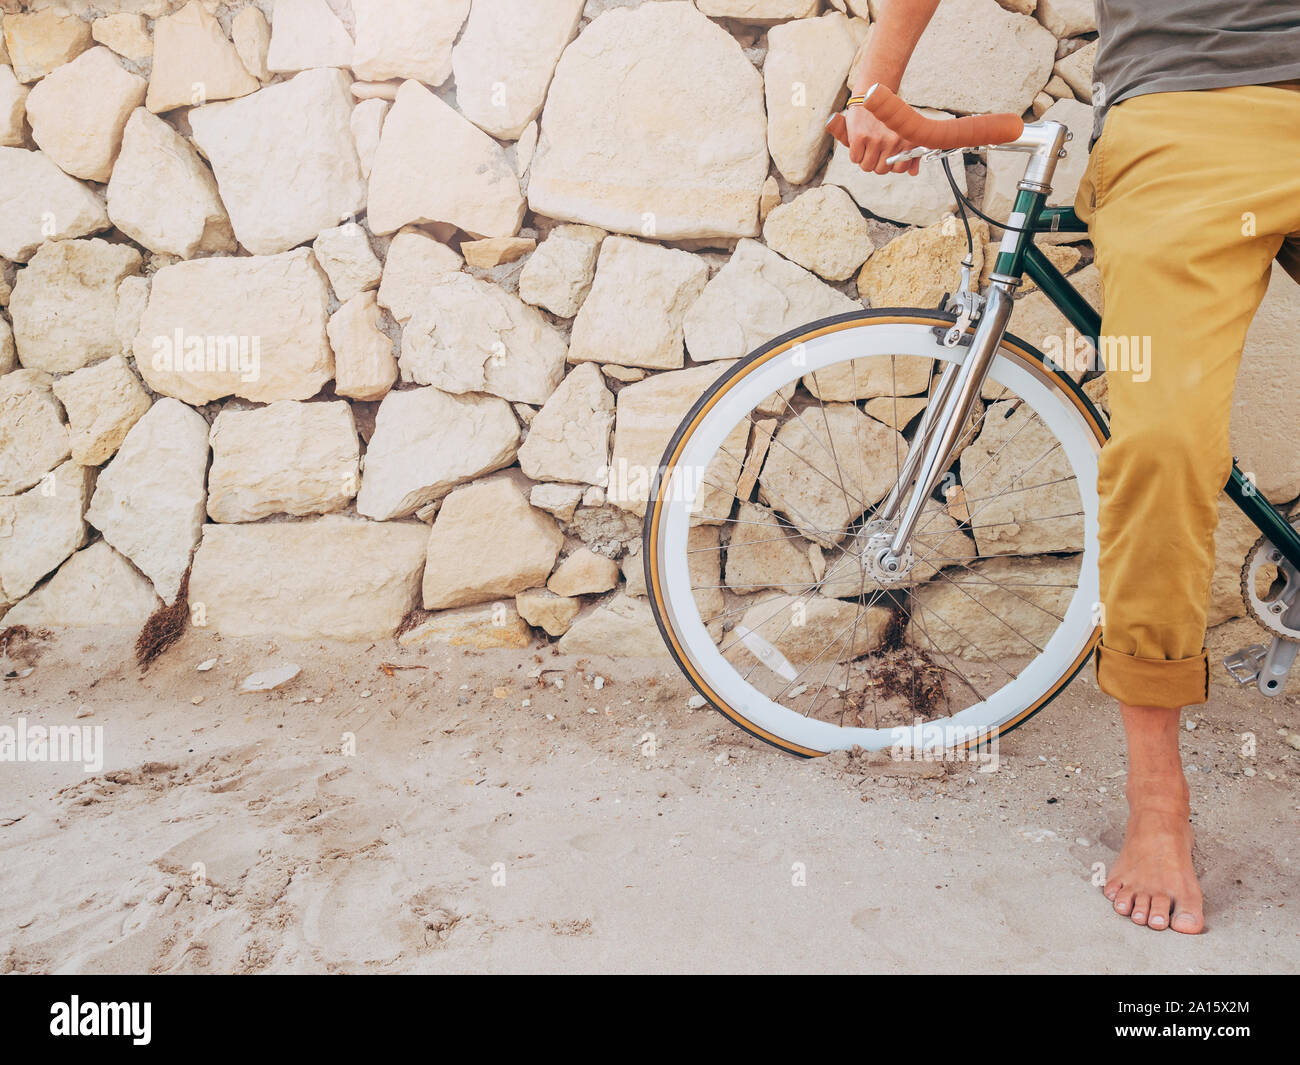 L'homme aux pieds nus avec Fixie vélo en face de mur en pierres naturelles sur la plage, vue partielle Banque D'Images